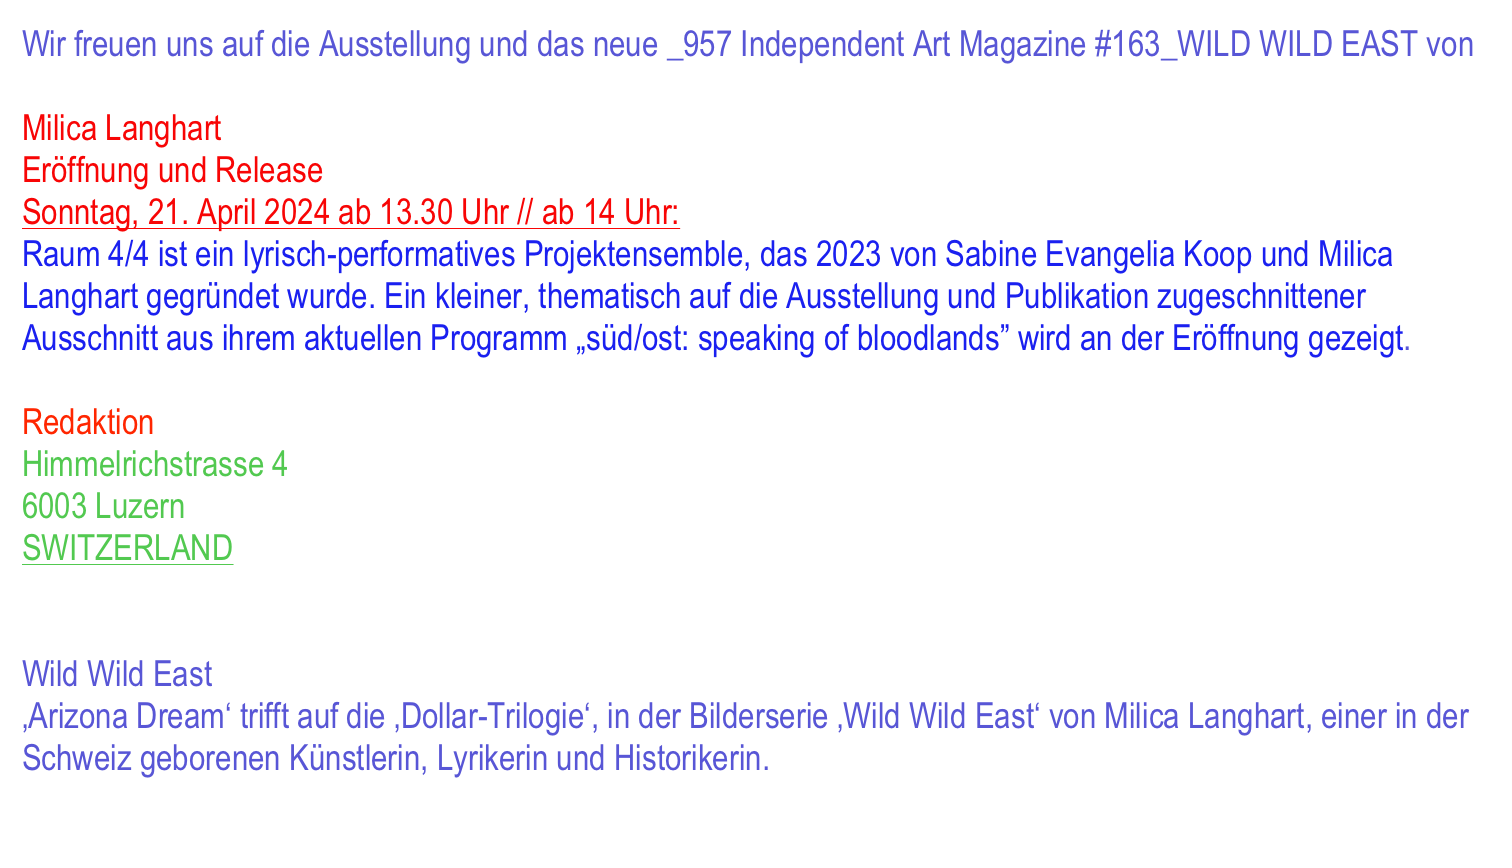 #128_Cortinas
von Felipe Mujica

Release: 13. JAN 2022 ab 18 Uhr
Redaktion, Himmelrichstrasse 4, 6003 Luzern
